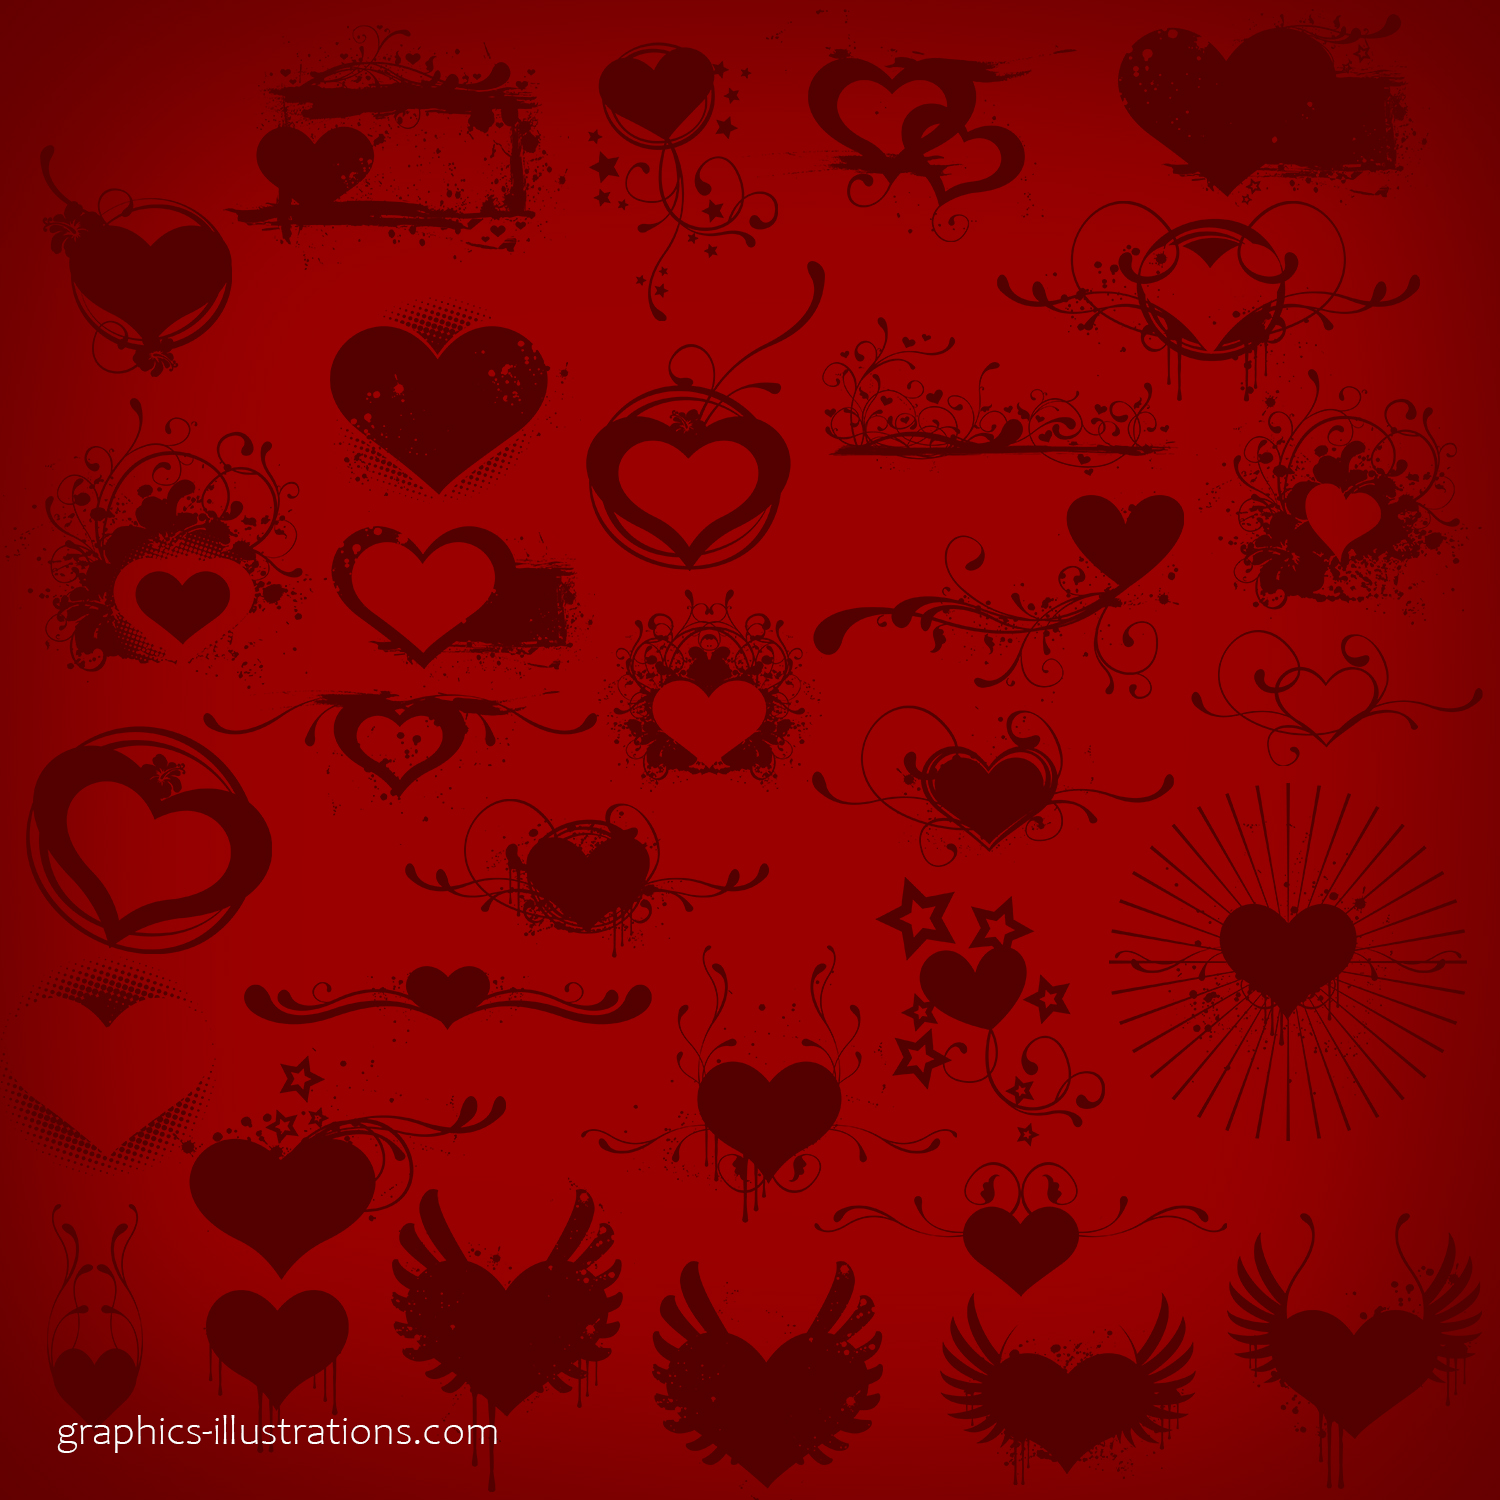 Hearts Photoshop brushes set